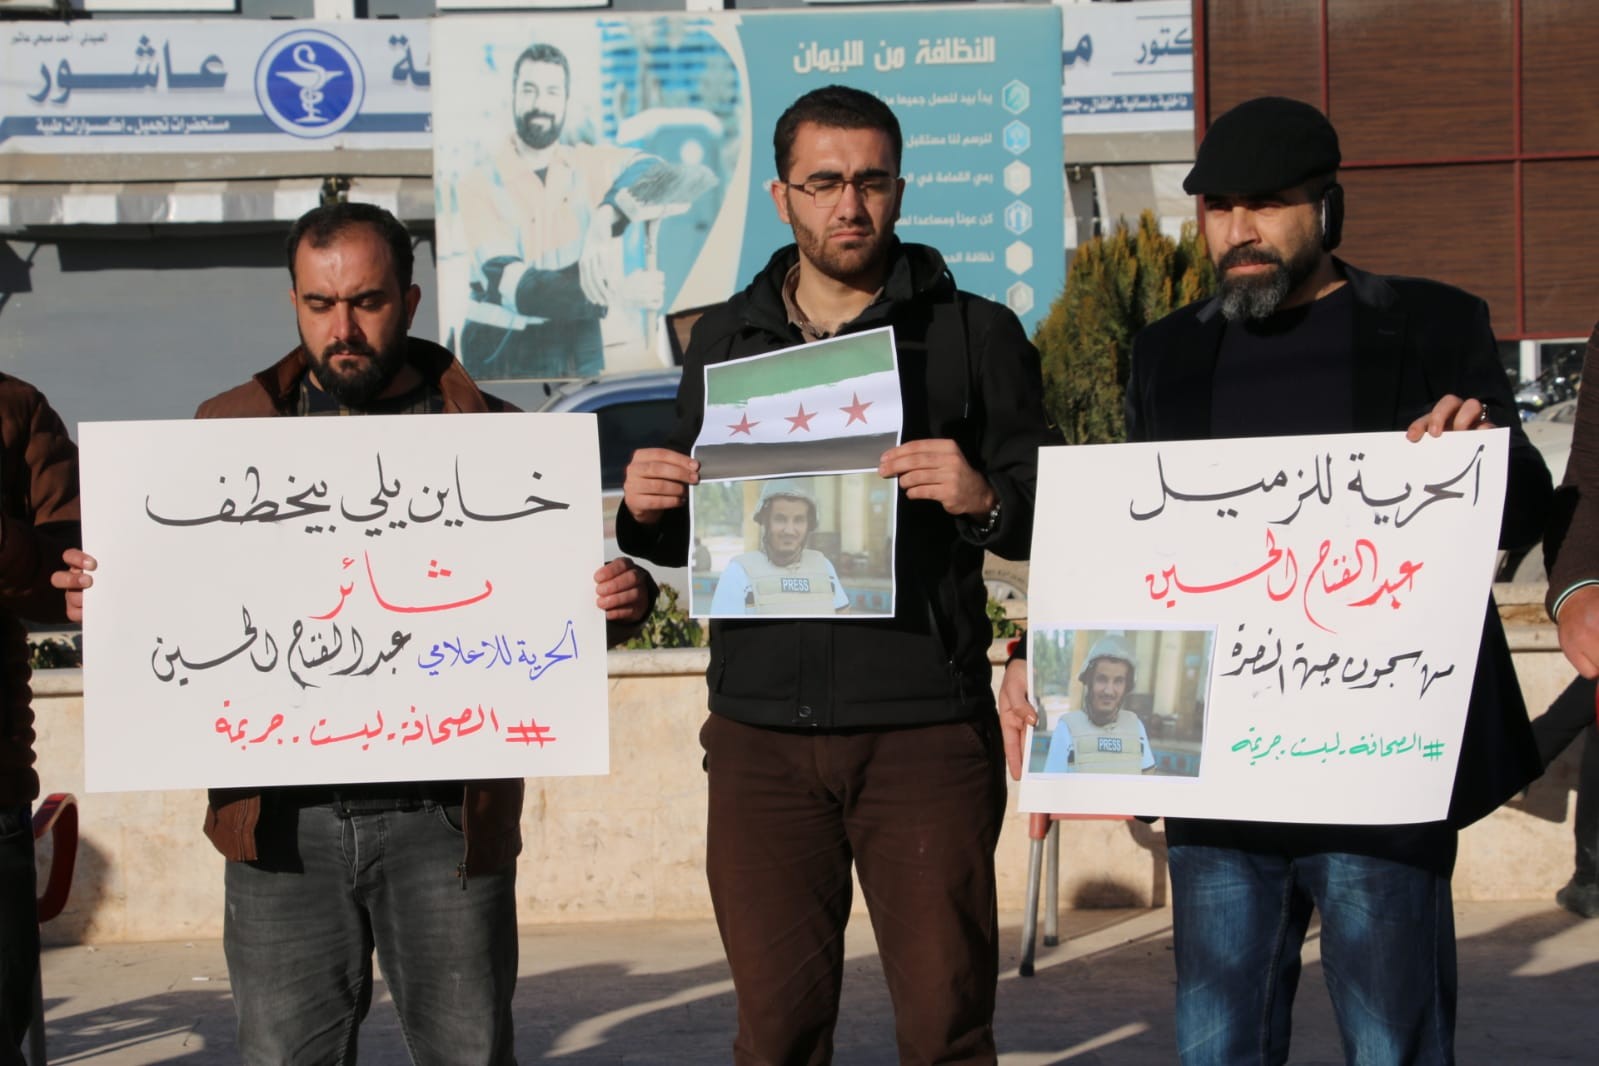 وقفة احتجاجية لنشطاء حلب تطالب هيئة تحرير الشام للكشف عن مصير الإعلامي.jpeg